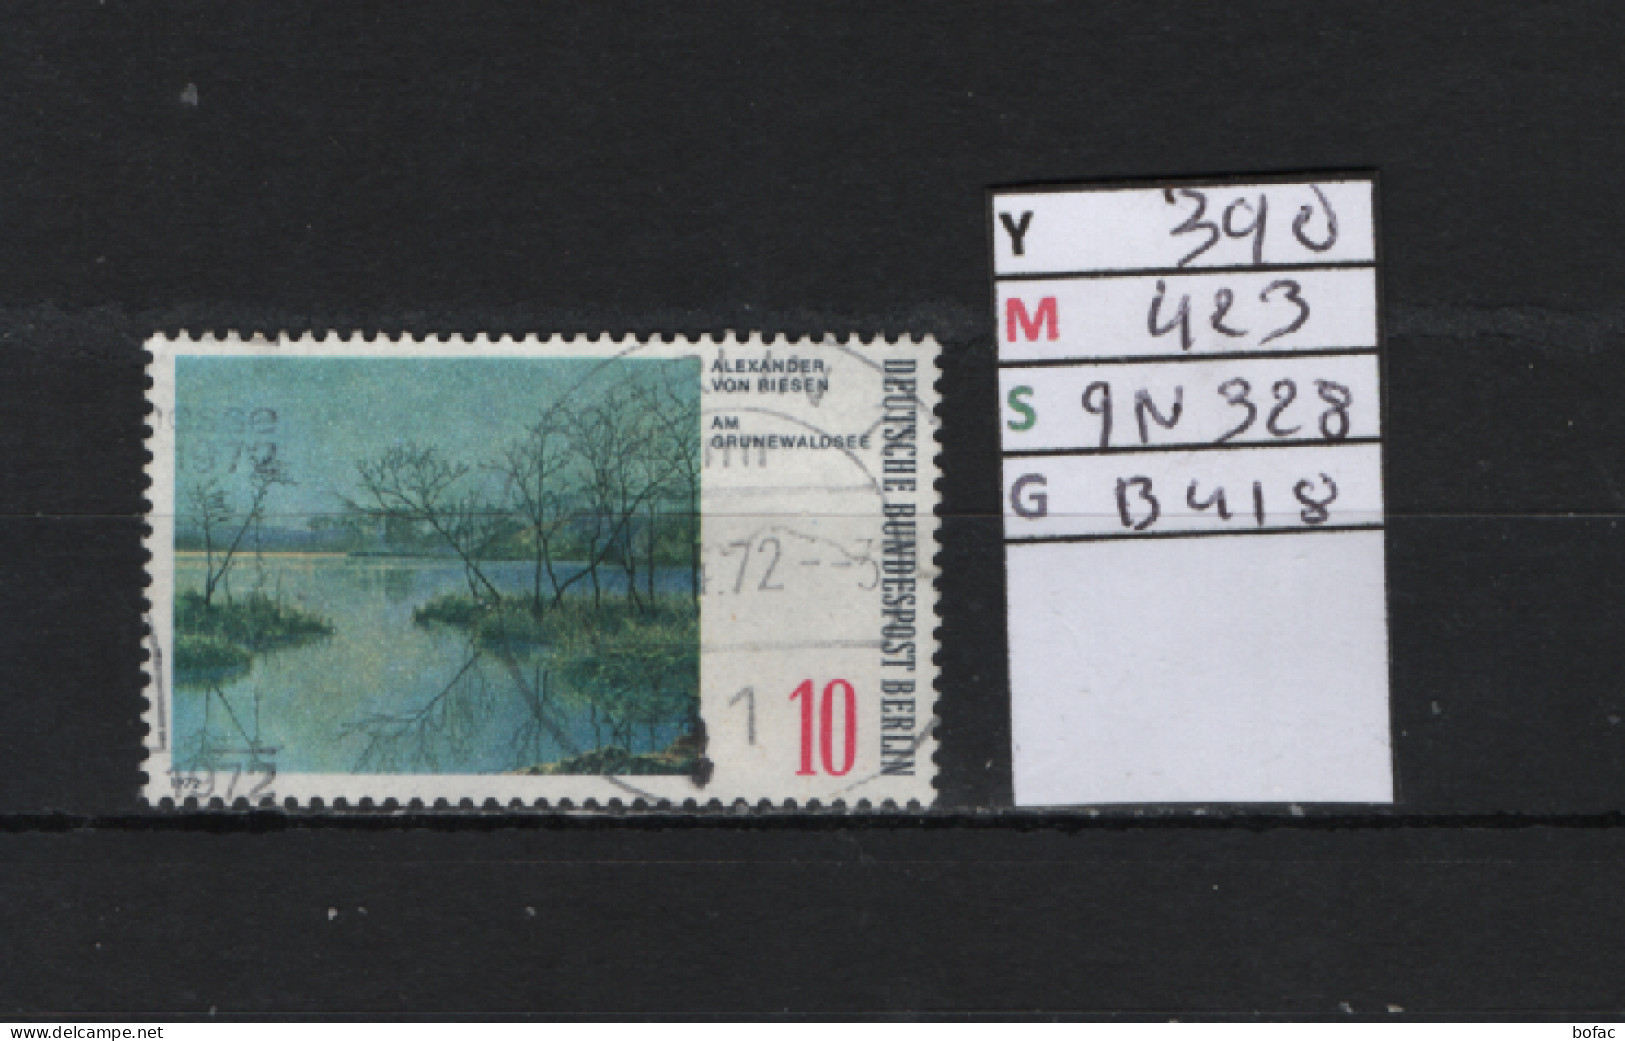 P. FIXE Obl 390 YT 423 MIC 9N328 SCO B418 GIB Lac De Grünewald Paysages Autour De Berlin 1972 *Berlin* 75/03 - Used Stamps